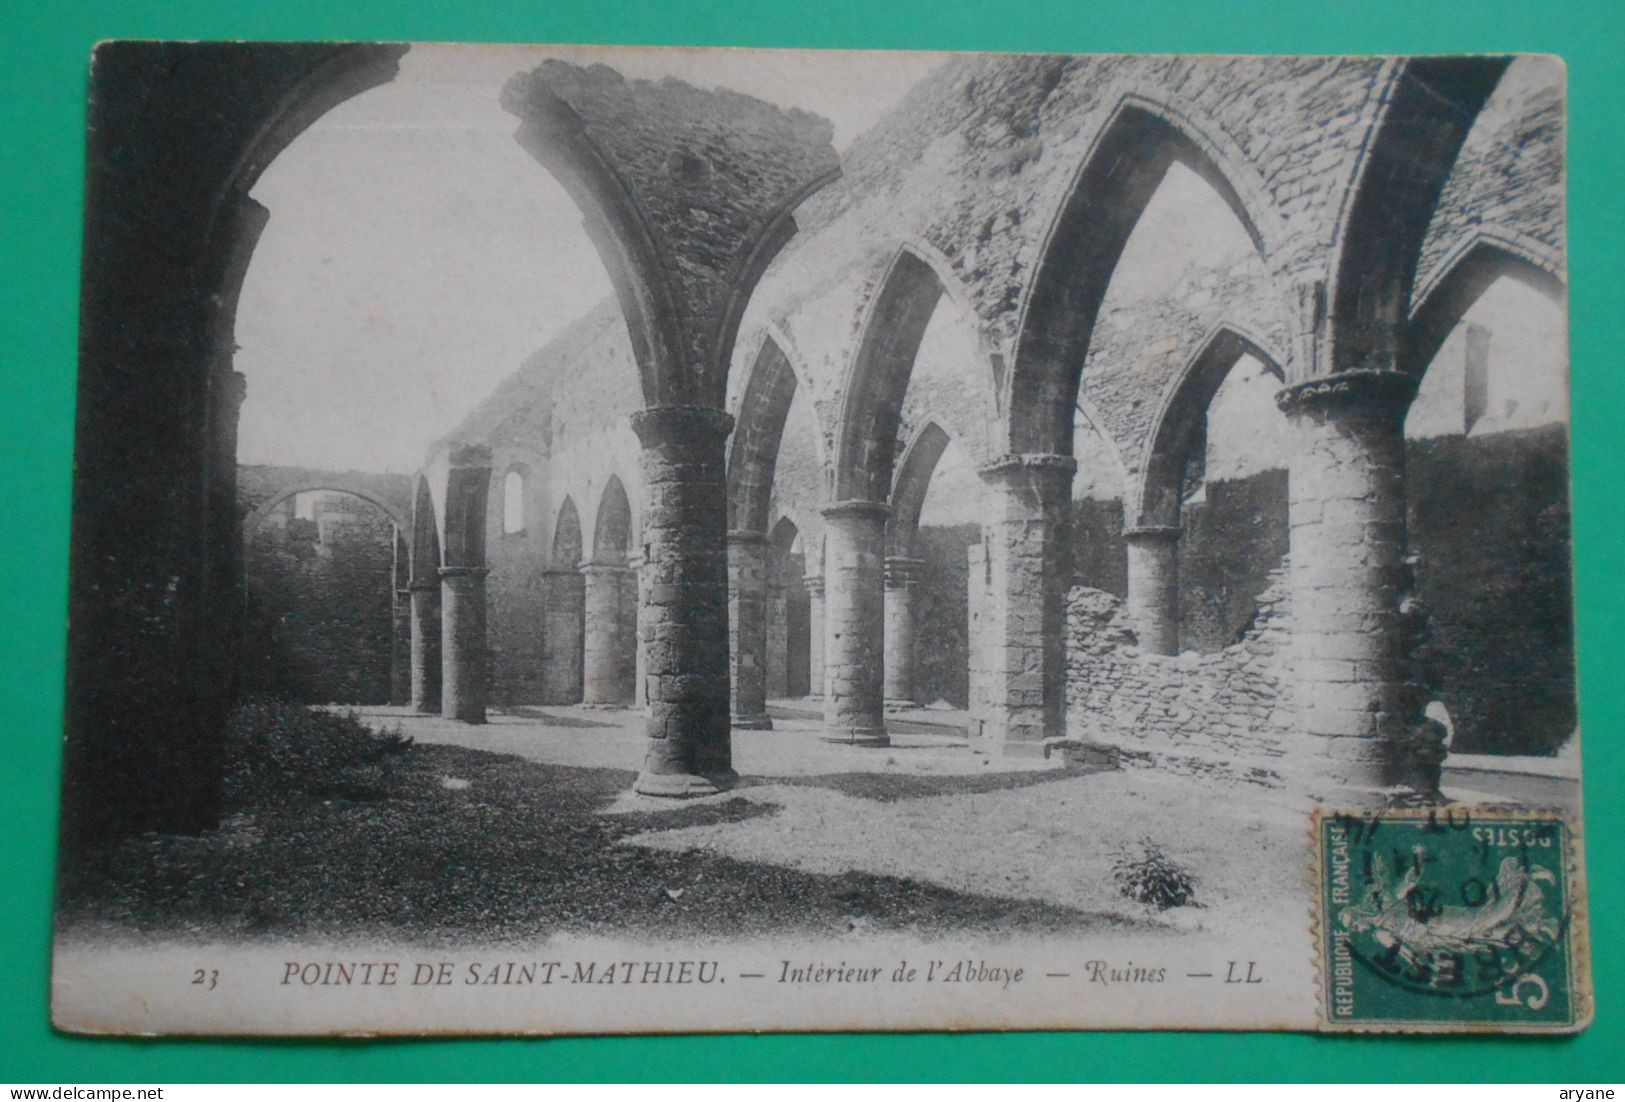 2259- CPA - PLOUGONVELIN (29) - POINTE DE SAINT-MATHIEU - Intérieur De L'Abbaye - Ruines - LL N° 23 -2 - Plougonvelin